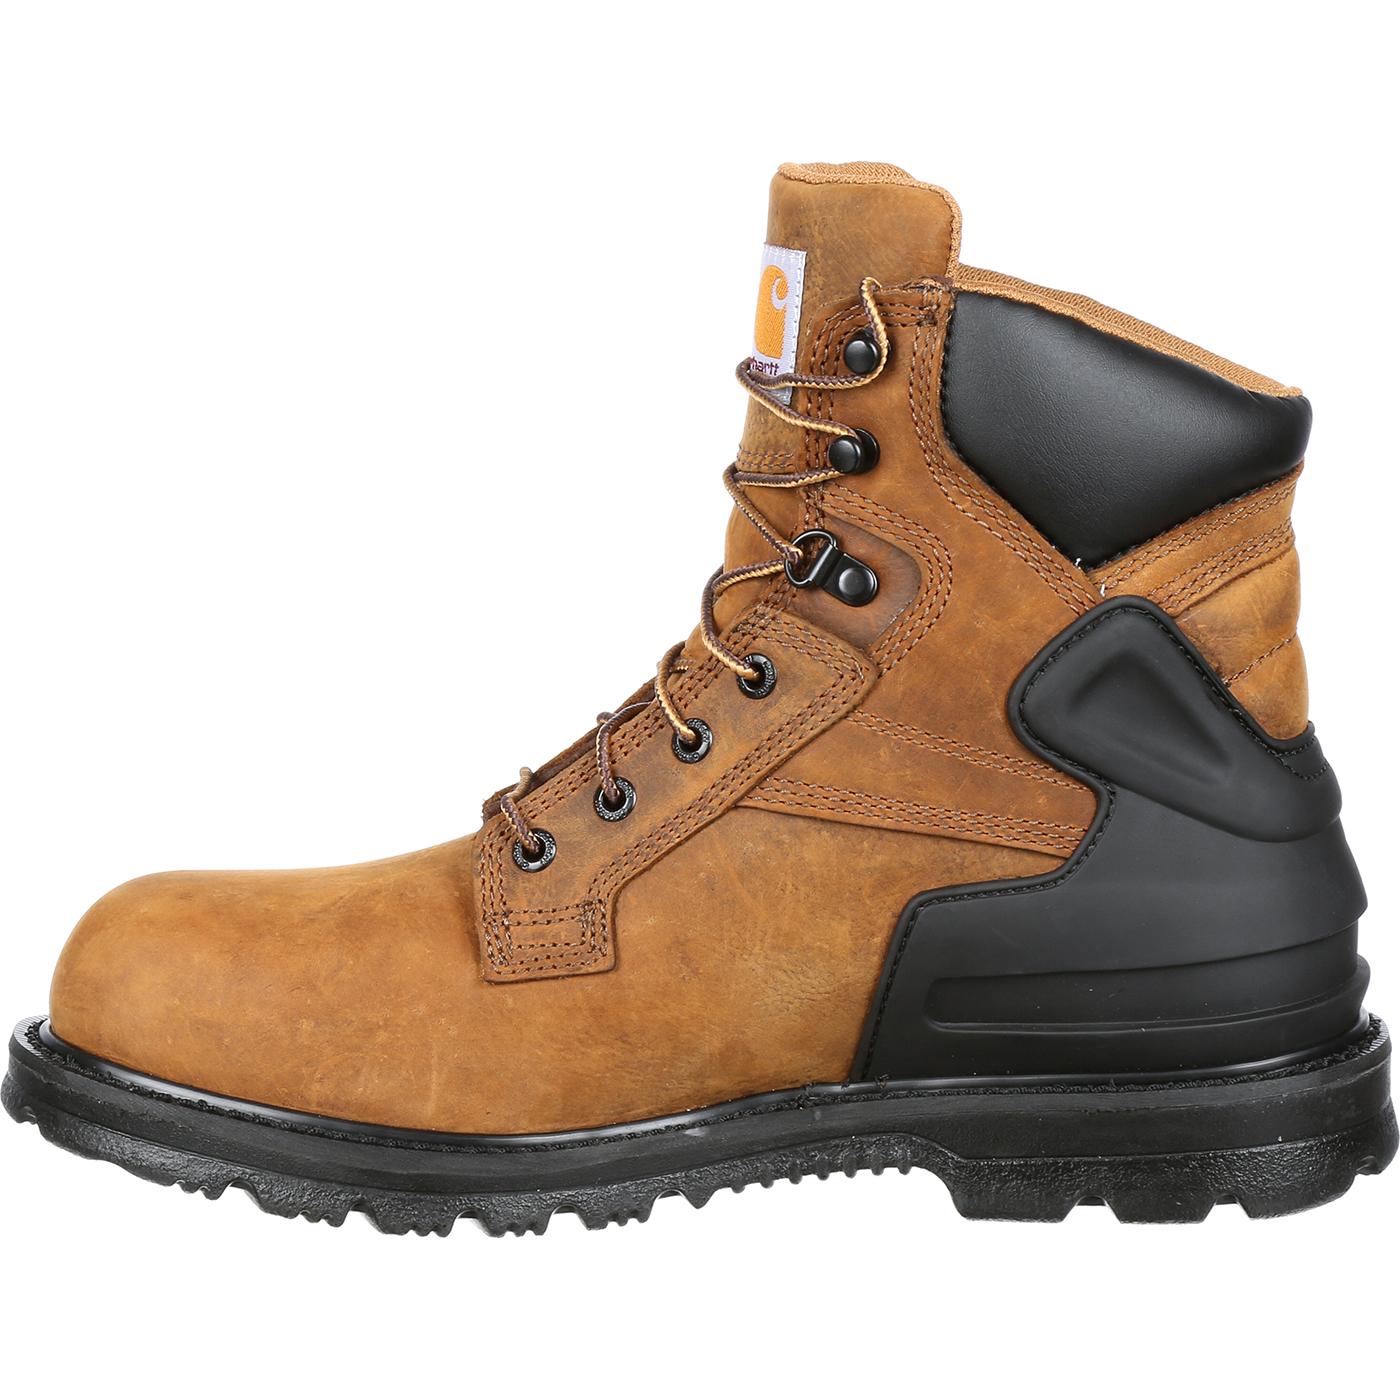 Steel Toe Waterproof Work Shoes by Carhartt #CMW6220